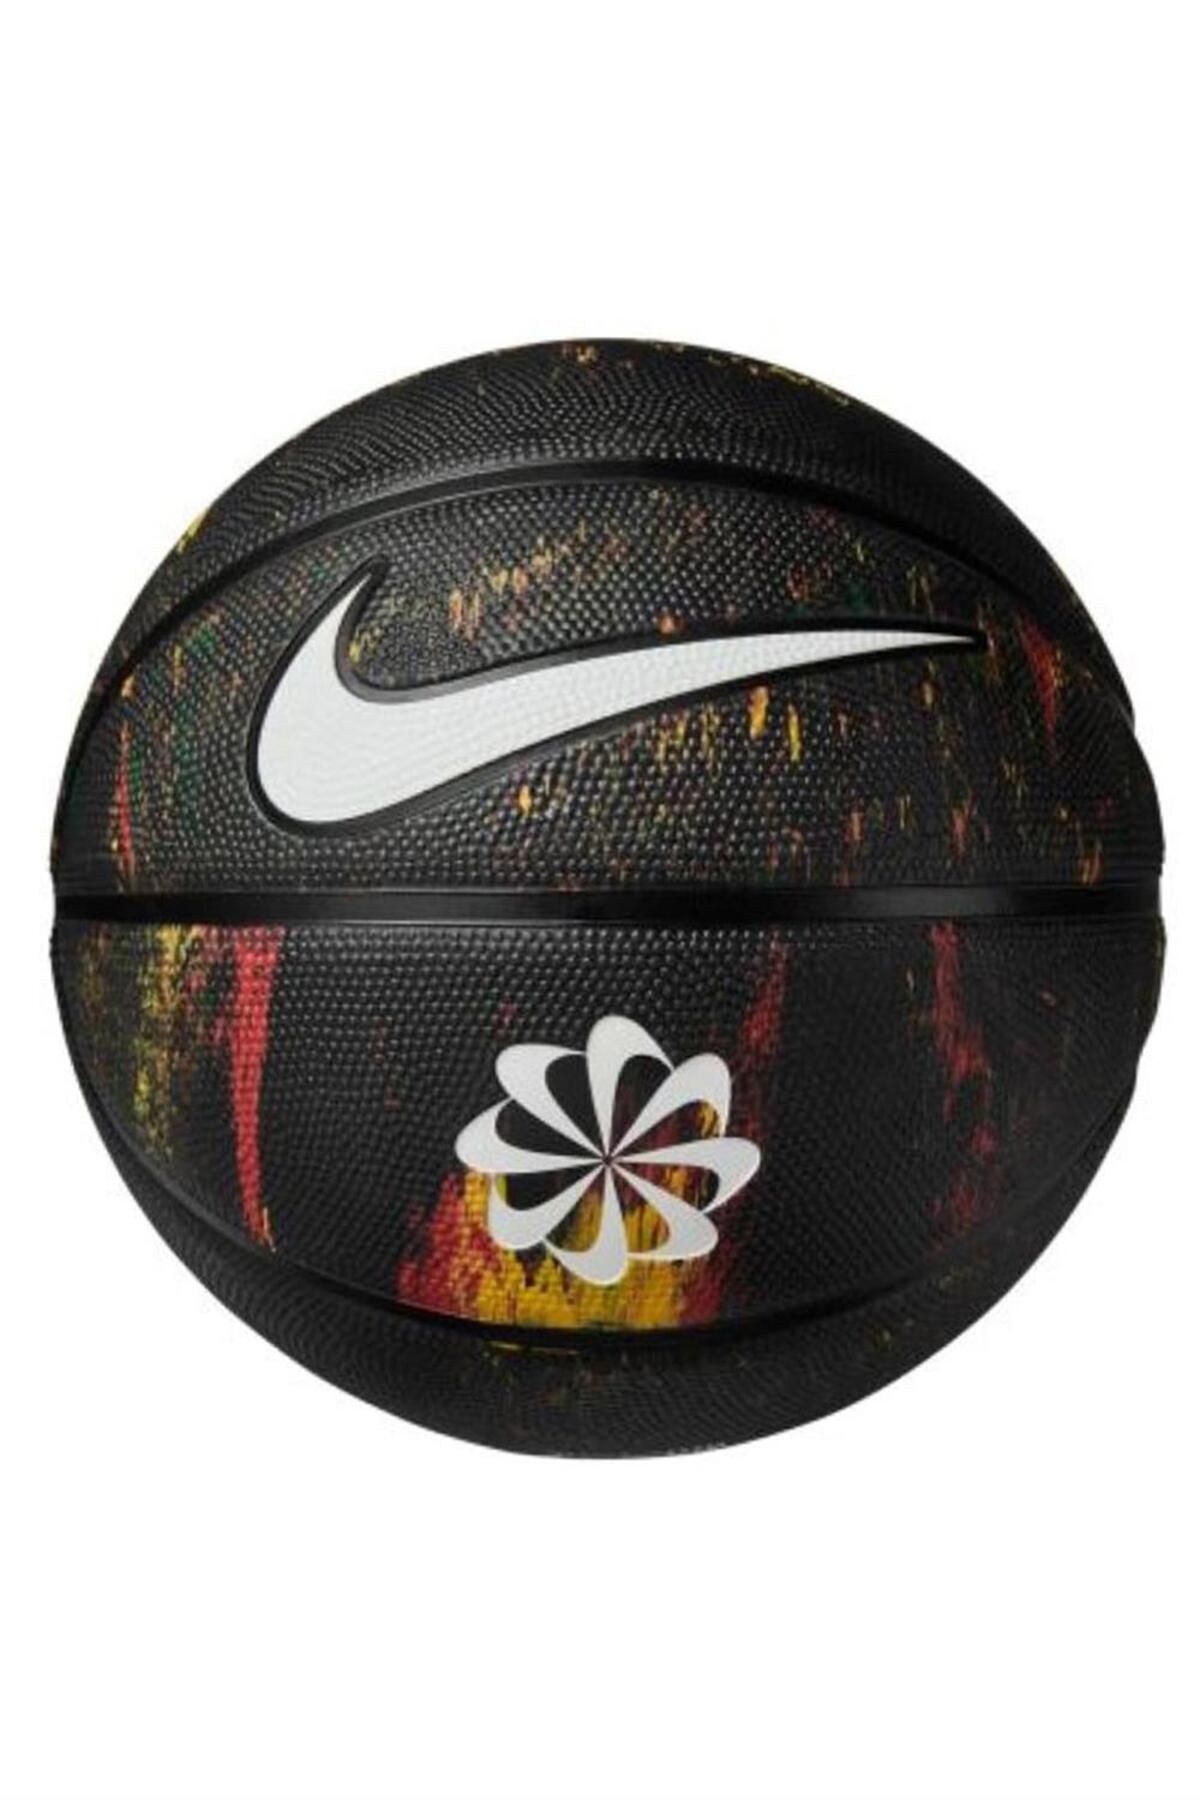 Nike Everyday Playground 8p Next Nature Deflated Basketbol Topu